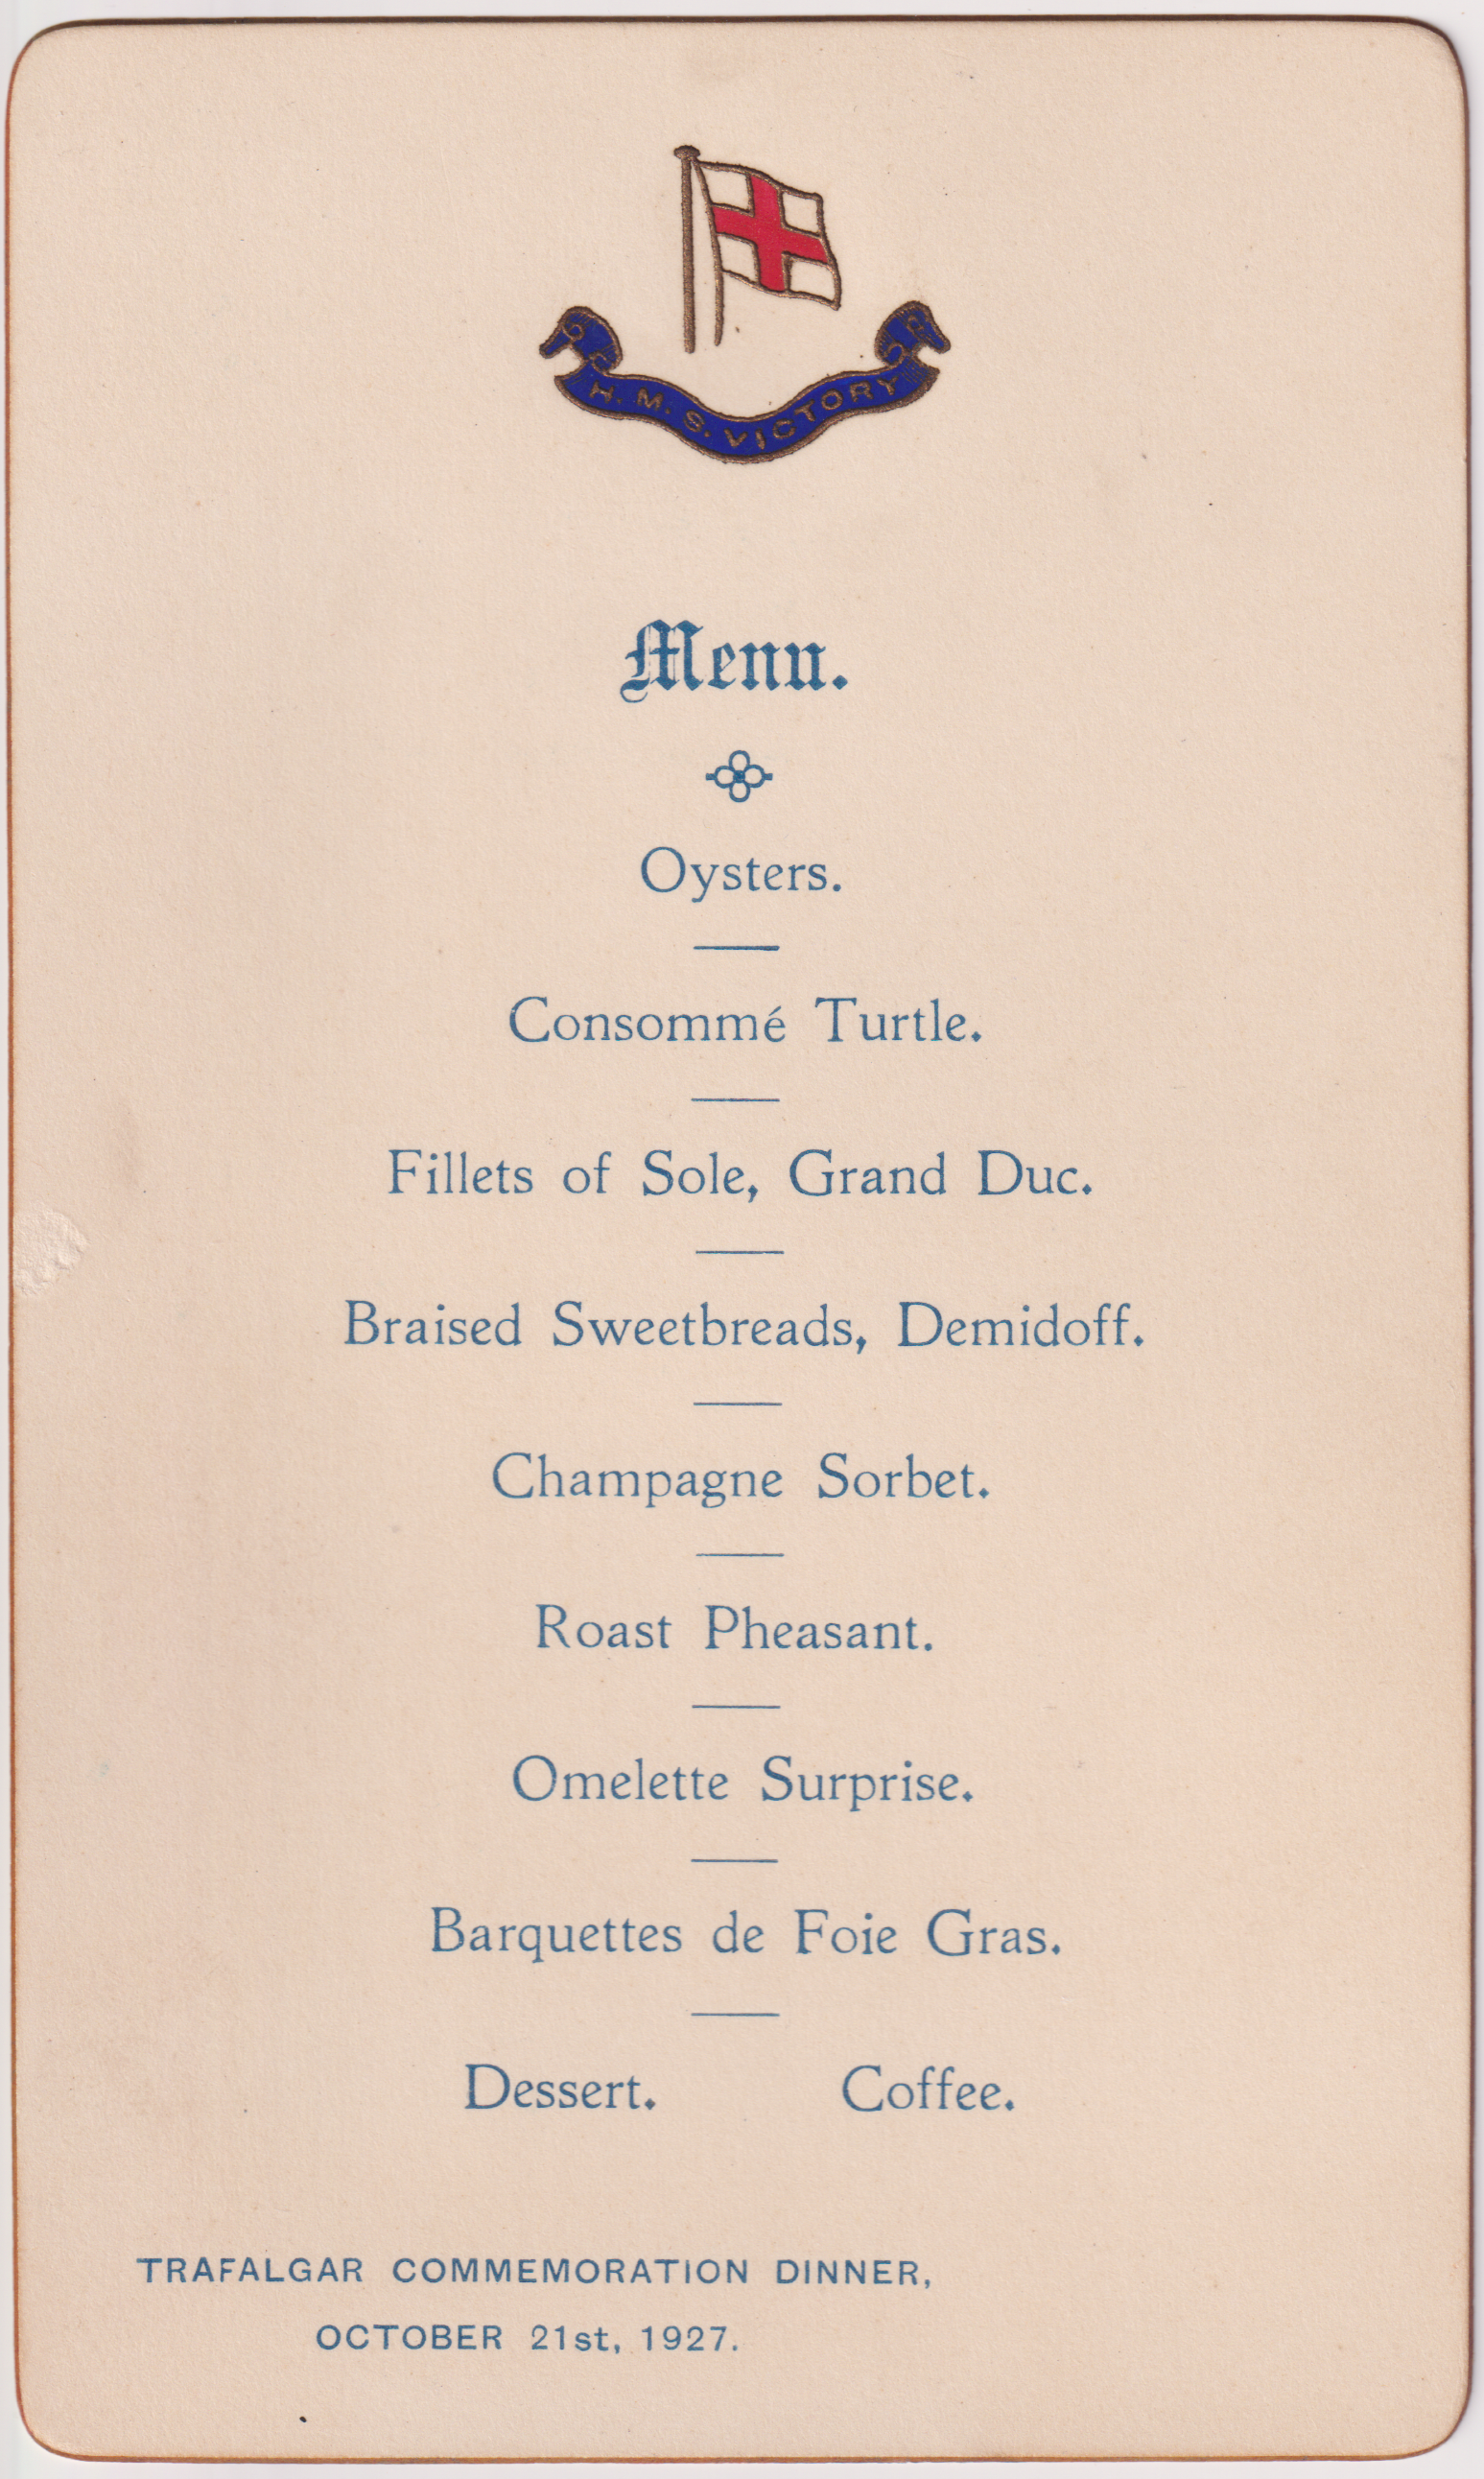 Trafalgar Night Dinner menu from 1927. Credit NMRN.